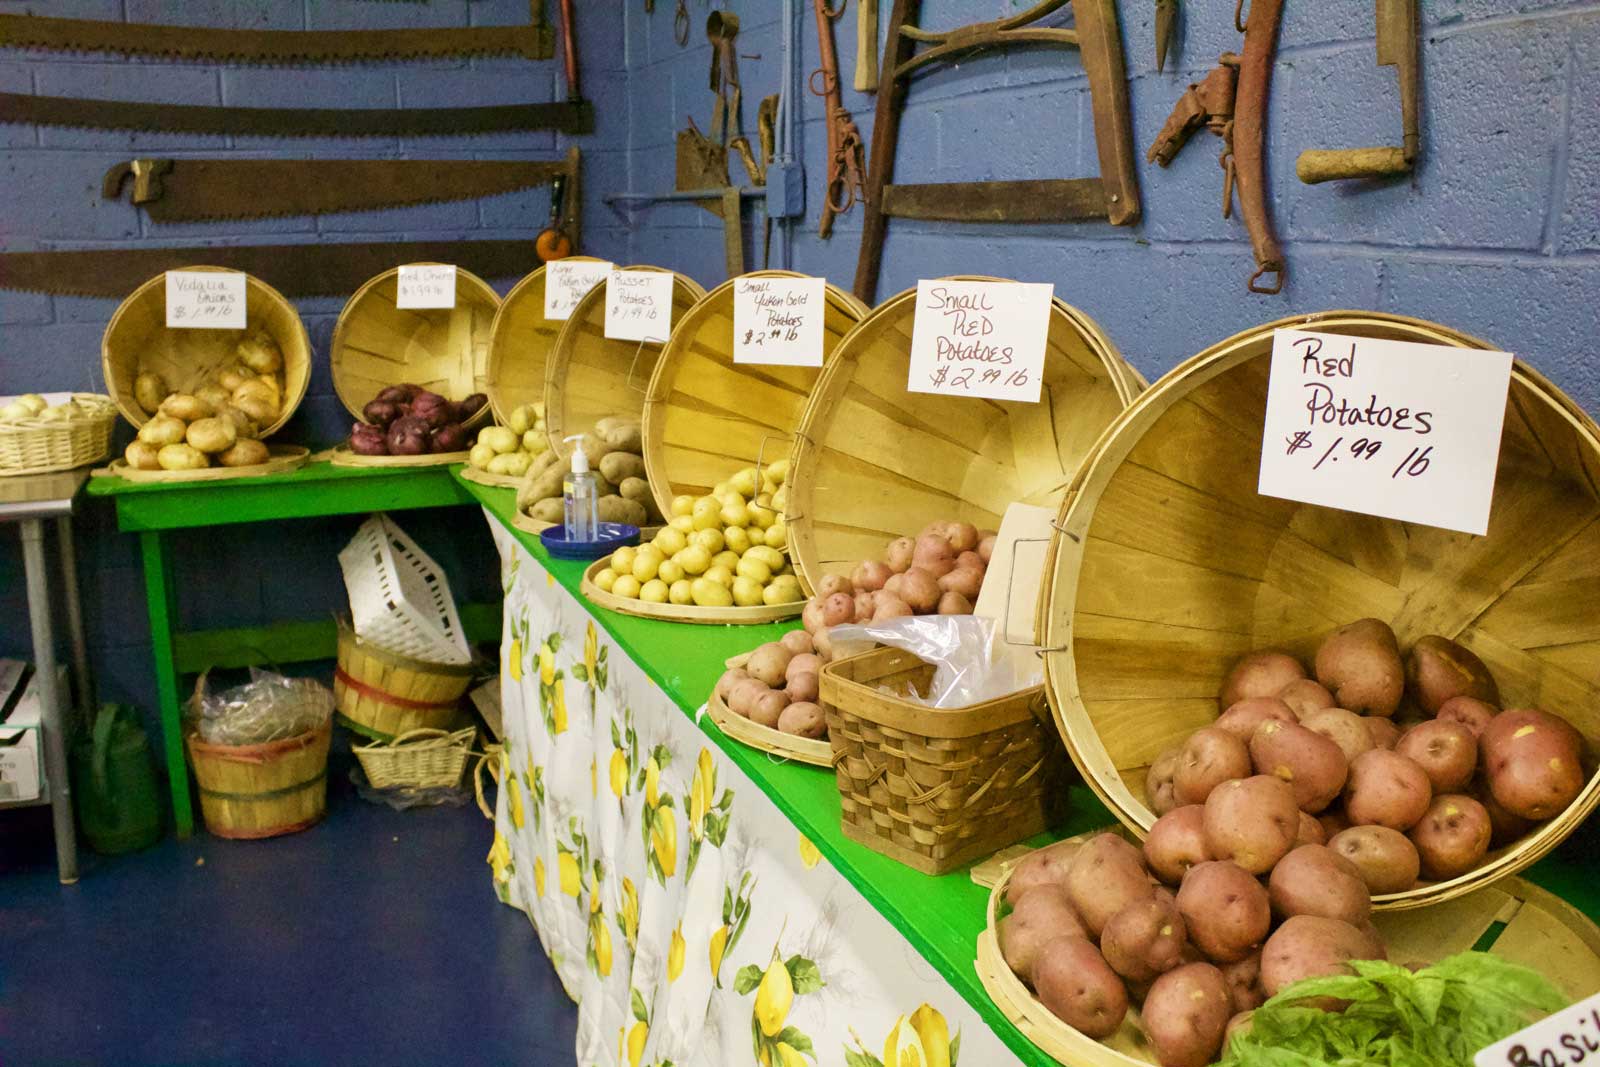 seven-varieties-of-potatoes